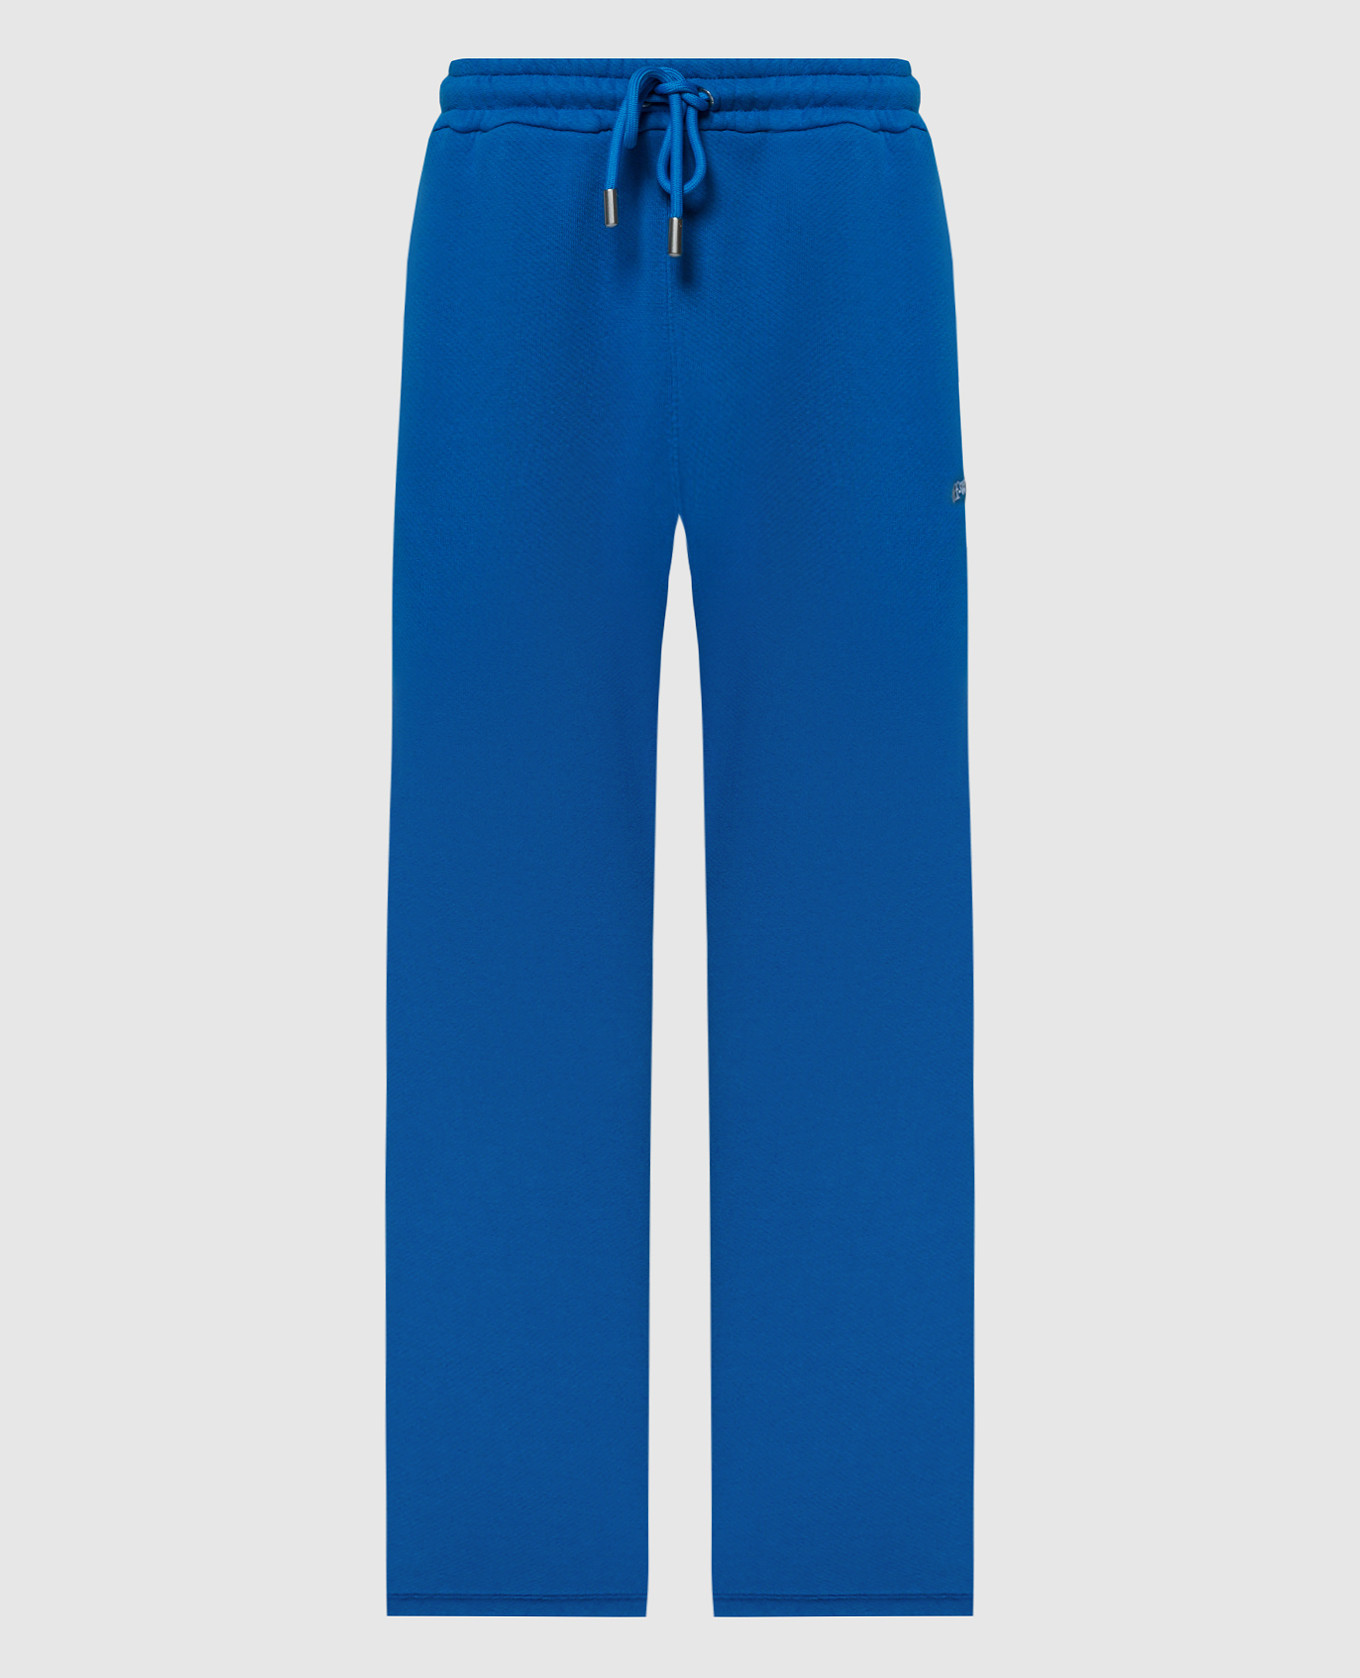 Синие спортивные брюки с вышивкой Bandana Arrow